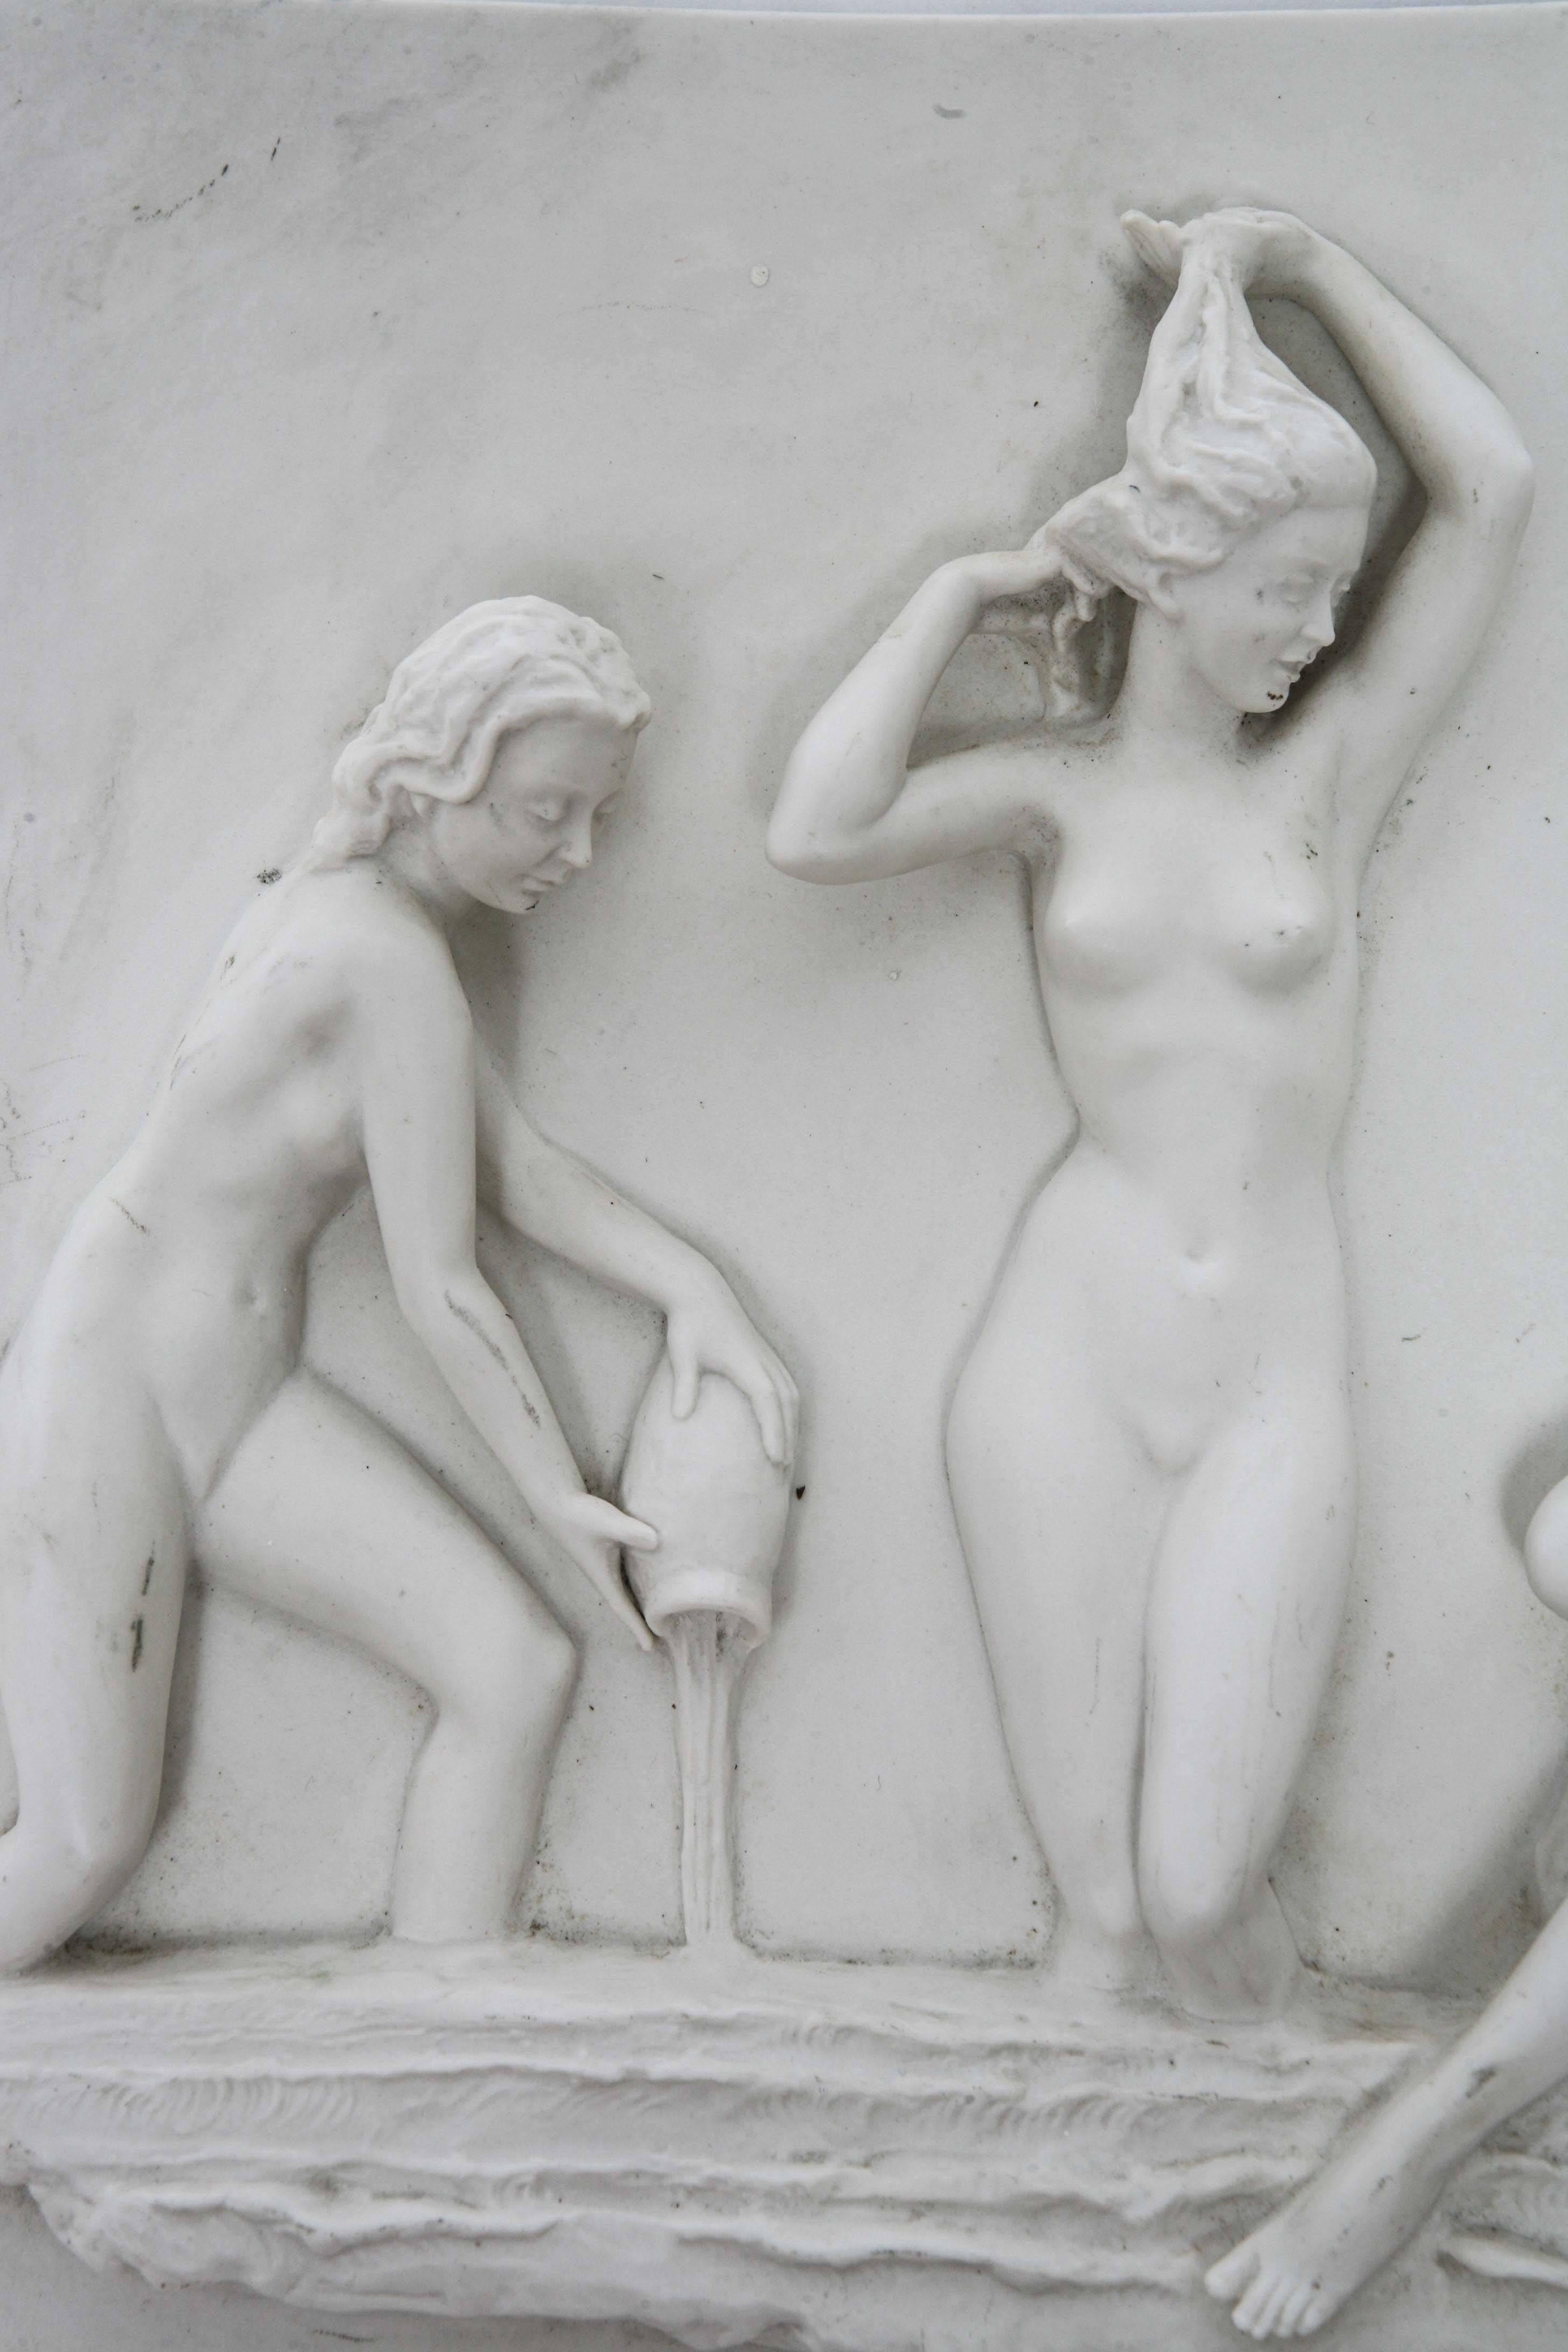 Molded Vintage Art Deco German Carl Werner Bisque Sculptural Female Nudes Plaque